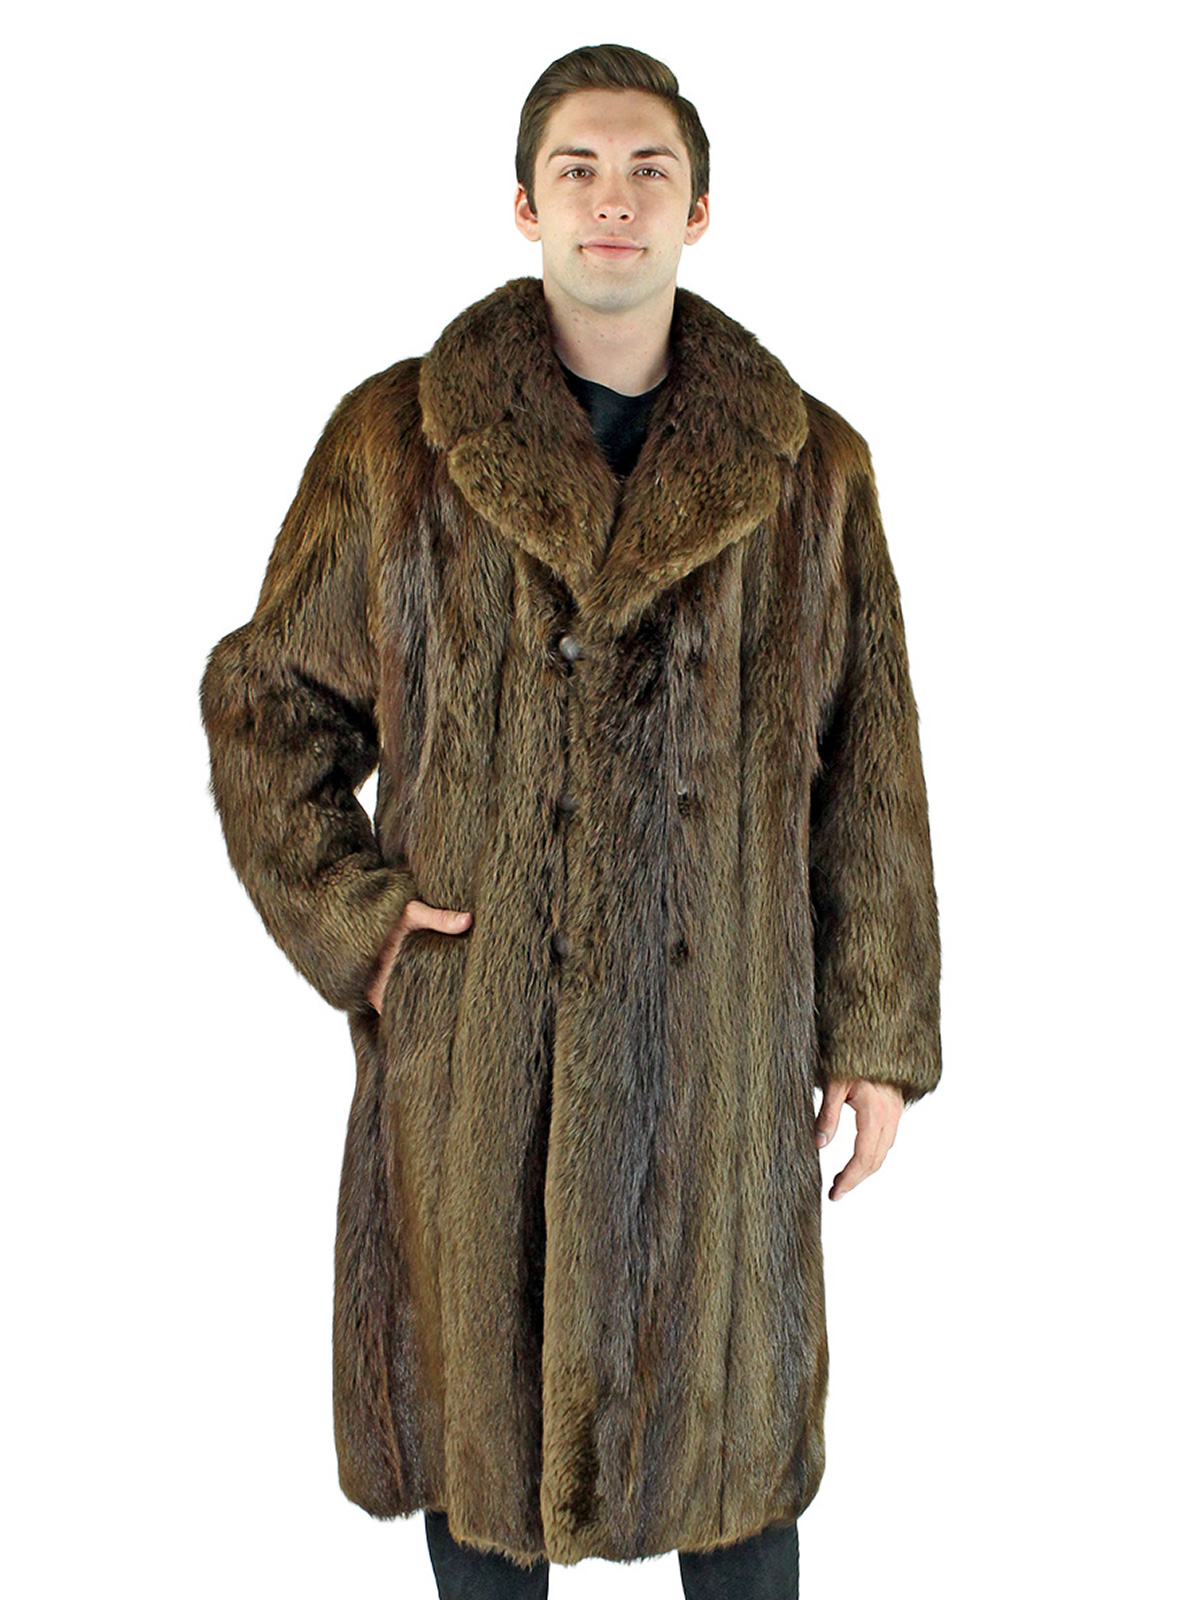 Long Hair Beaver Fur Coat - Men's Fur Coat - Large | Estate Furs